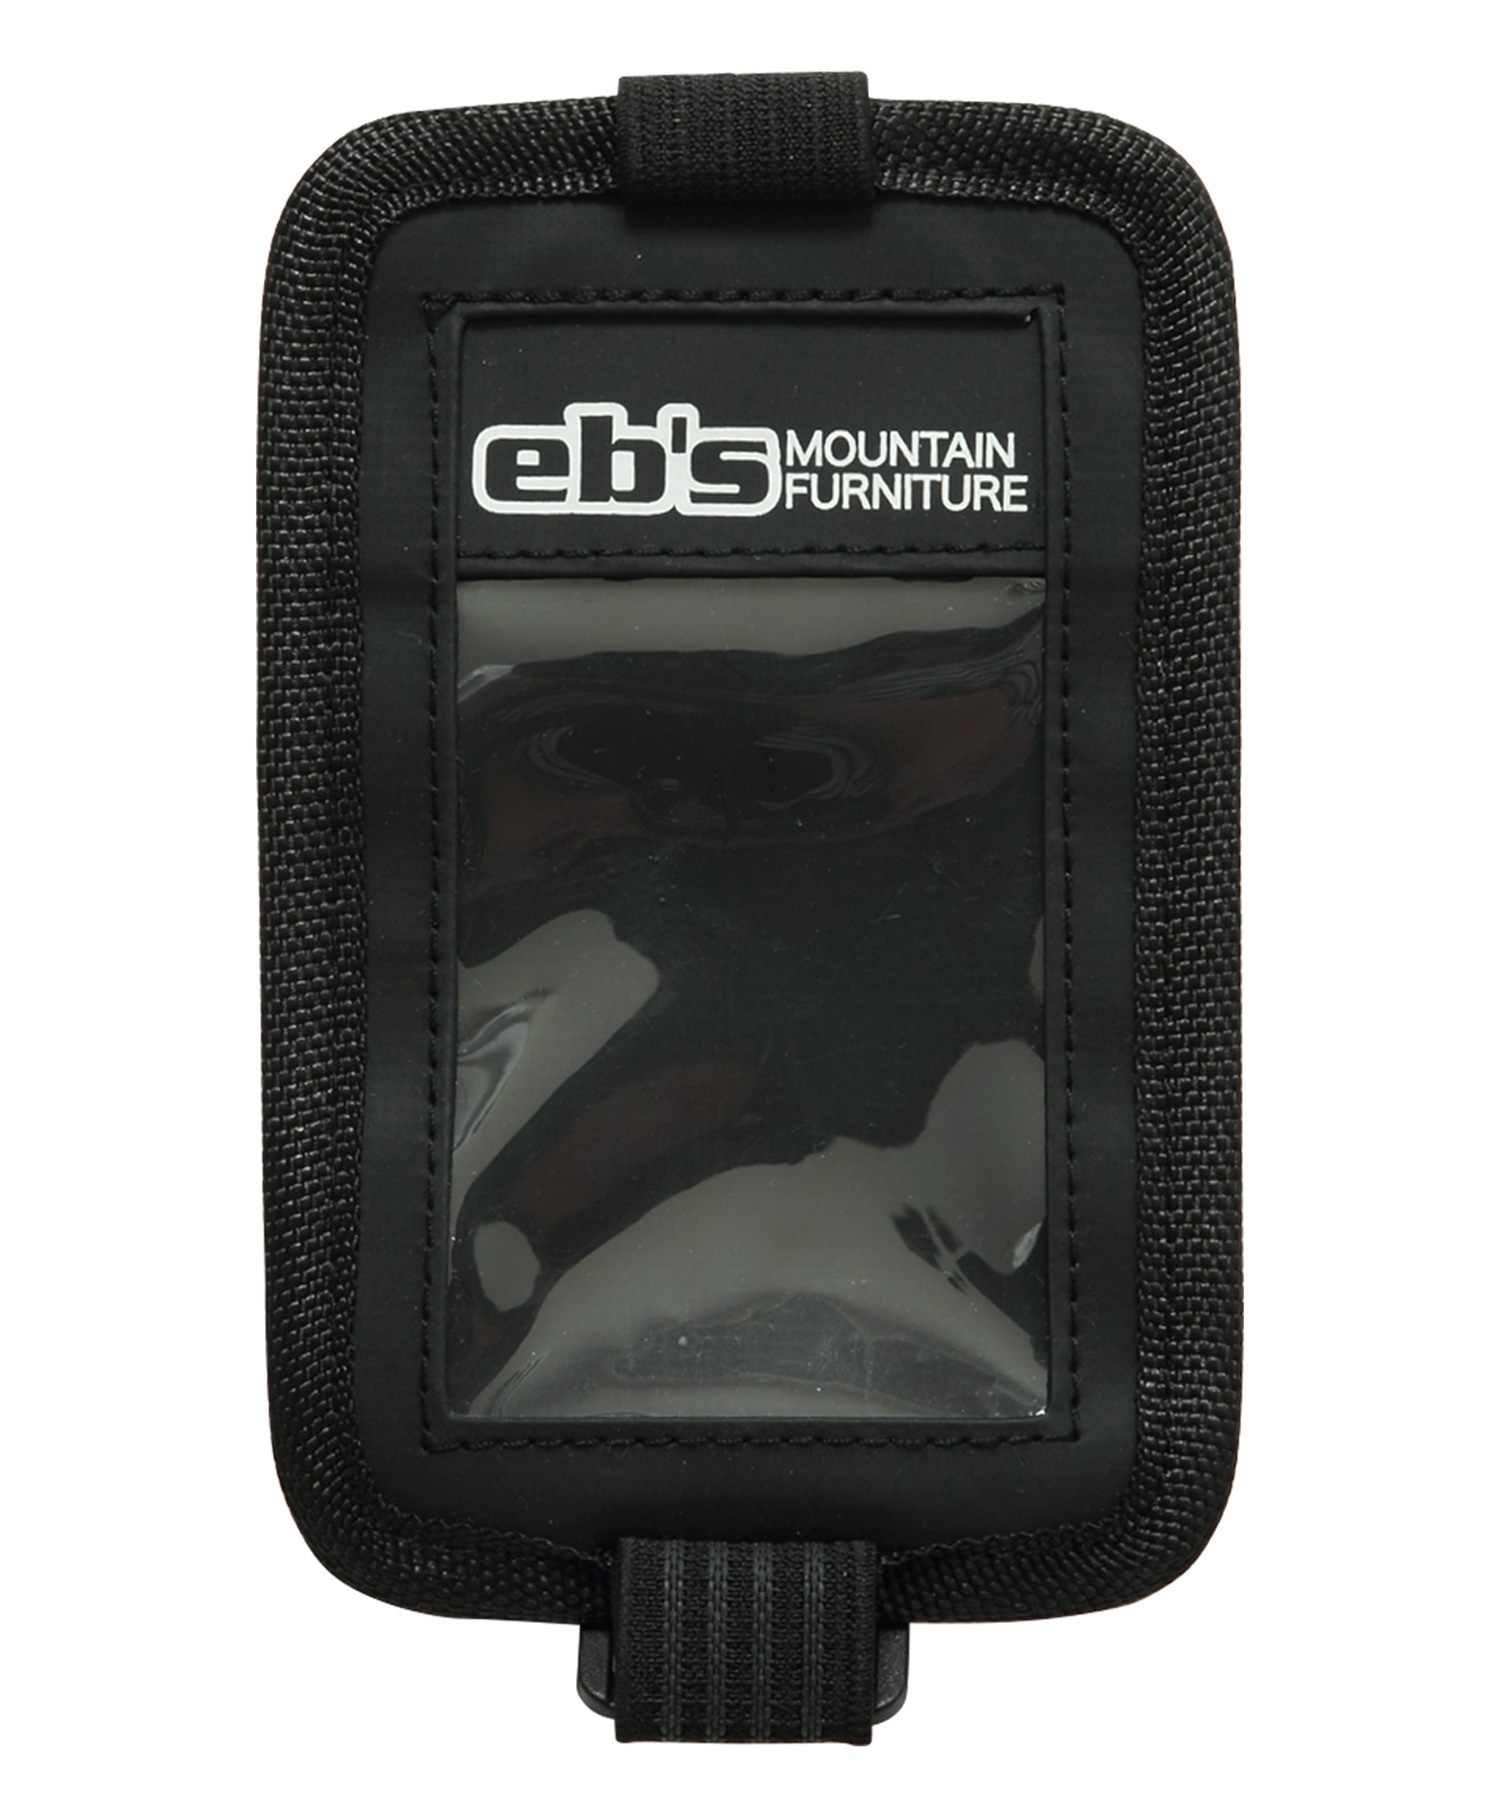 スノーボード パスケース eb's エビス PASS ARM CLASSIC 23-24モデル ムラサキスポーツ KK J6(HGREY-ONESIZE)